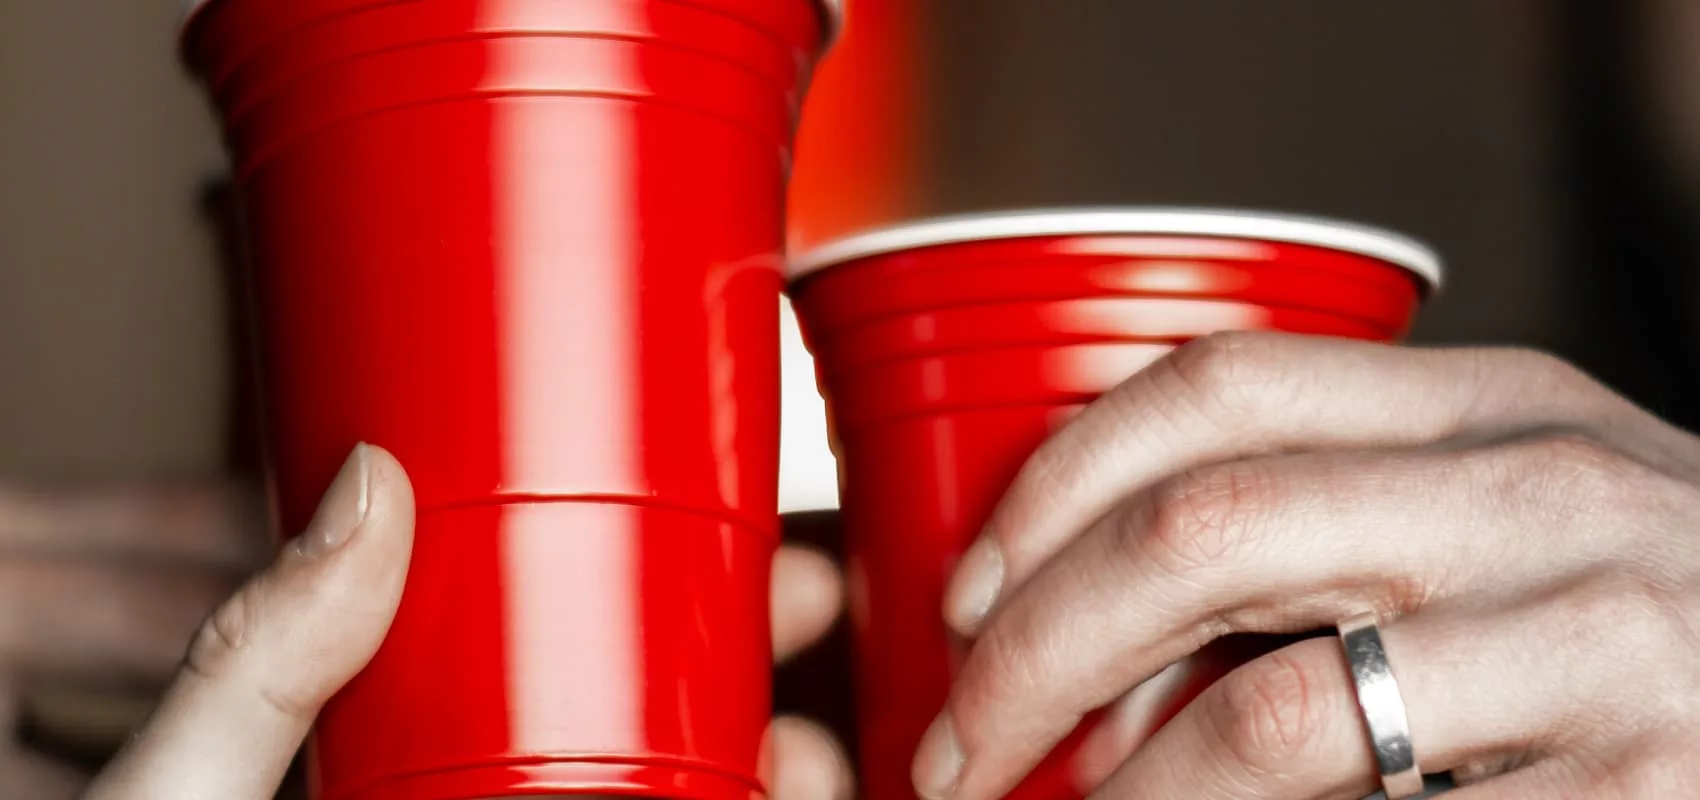 10 Best Three-Player Drinking Games